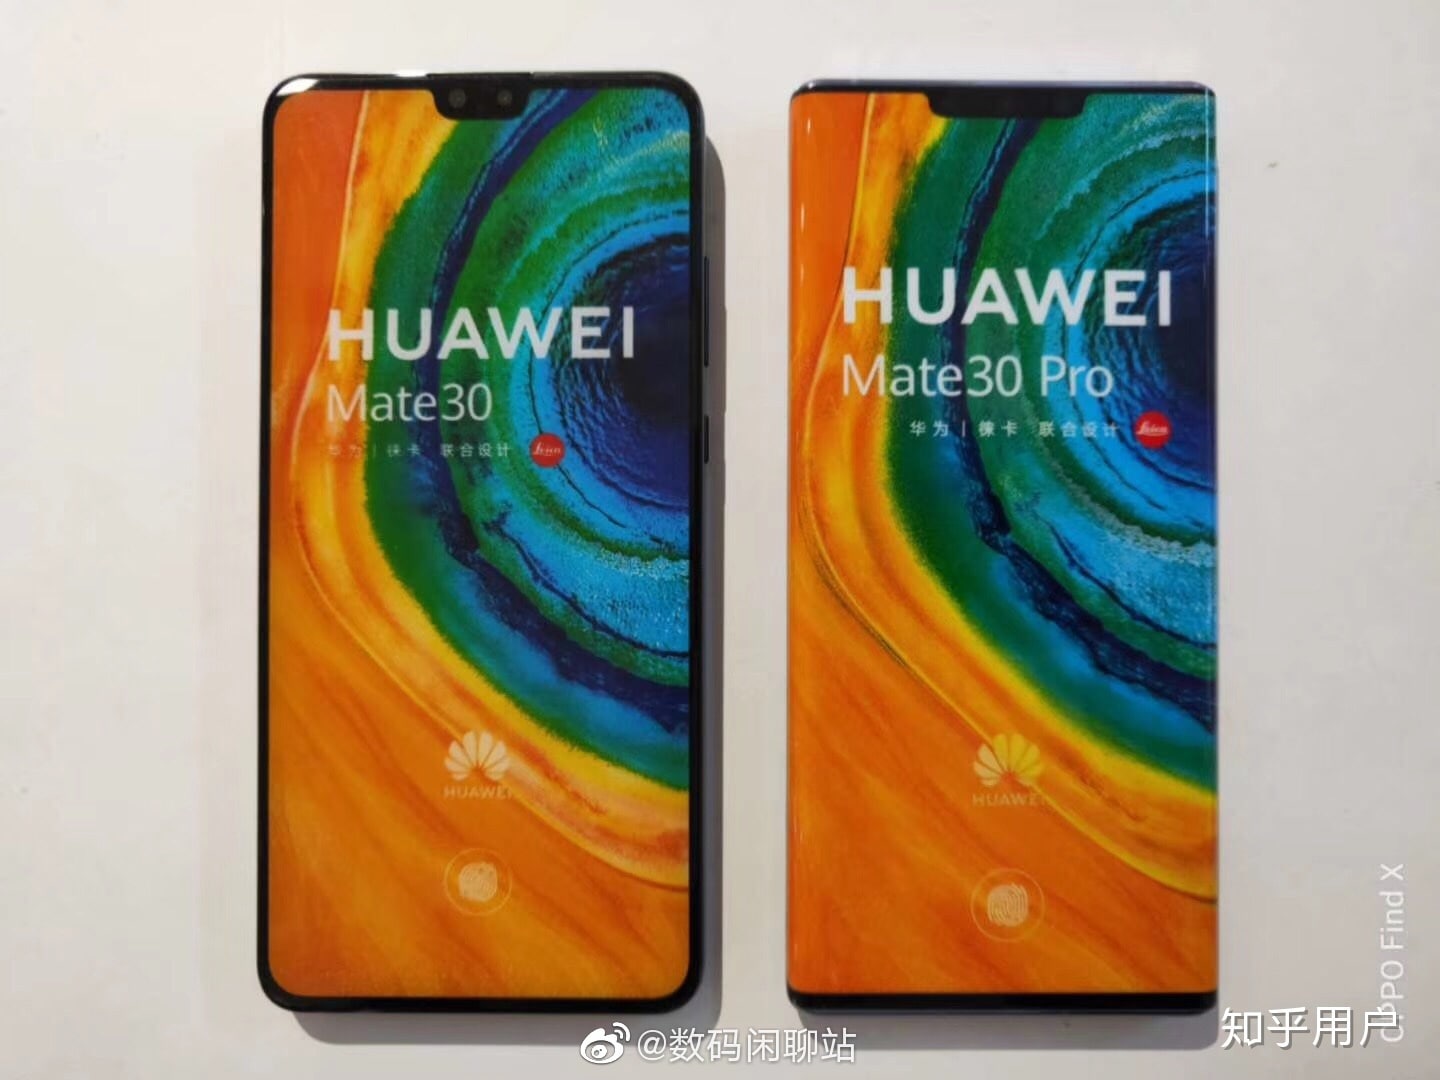 Huawei Mate 30 Pro pada penampilan pertama di AnTuTu mengalahkan semua Snapdragon 855 (dan sepasang iPhone 11) (foto) 1